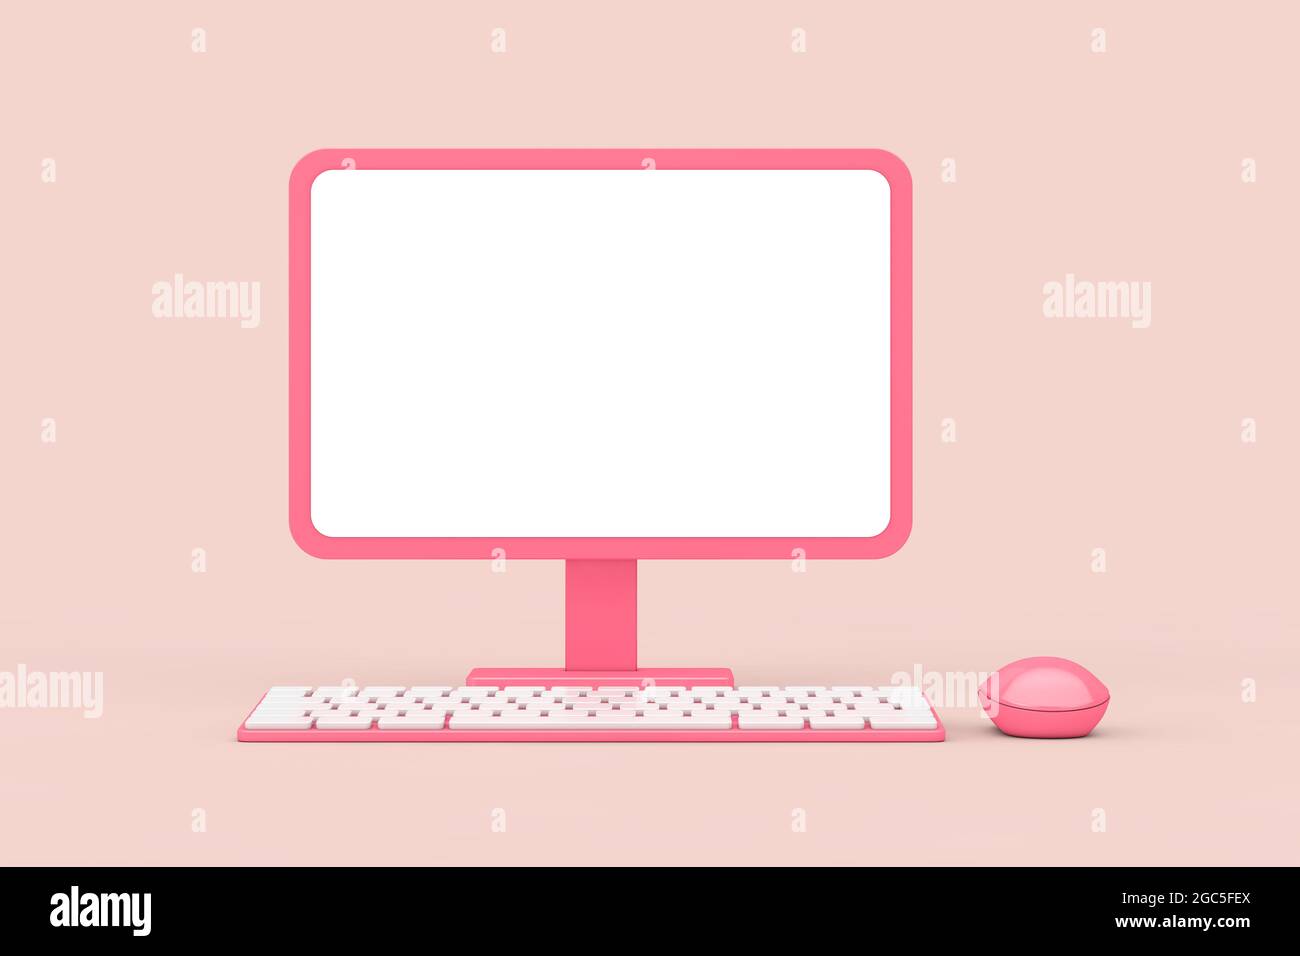 Mẫu desktop Abstract Cartoon Pink cho máy tính của bạn sẽ khiến bạn ngạc nhiên và thích thú. Với sự kết hợp táo bạo giữa màu hồng và một chút tinh tế của họa tiết độc đáo, hãy để desktop của bạn trở nên độc đáo và nổi bật. Hãy xem hình ảnh liên quan để thưởng thức những mẫu Abstract Cartoon Pink và làm mới desktop của bạn ngay bây giờ.